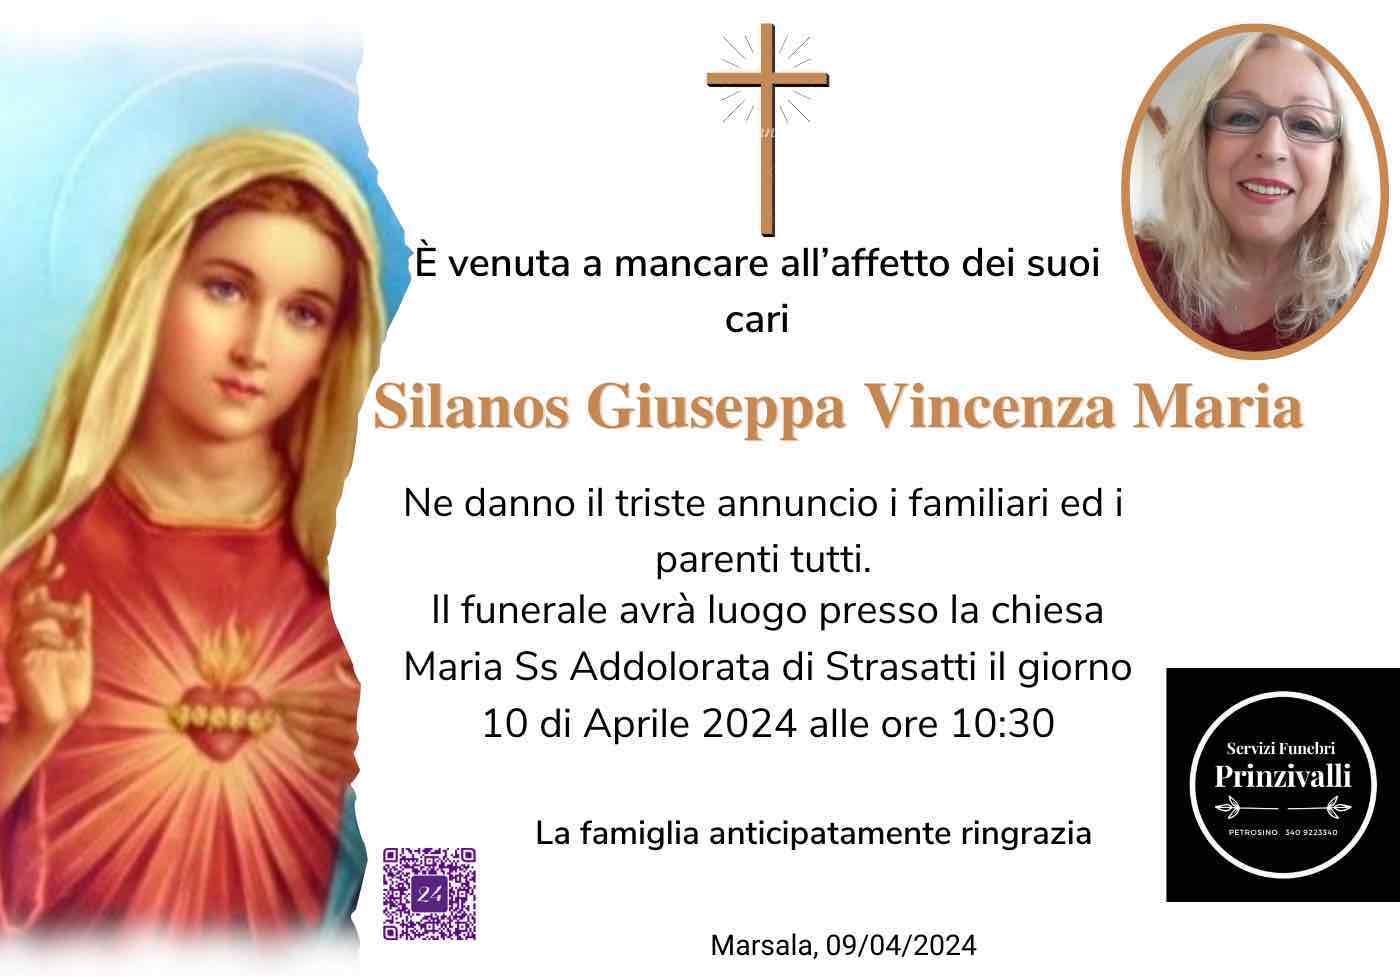 Giuseppa Vincenza Maria Silanos